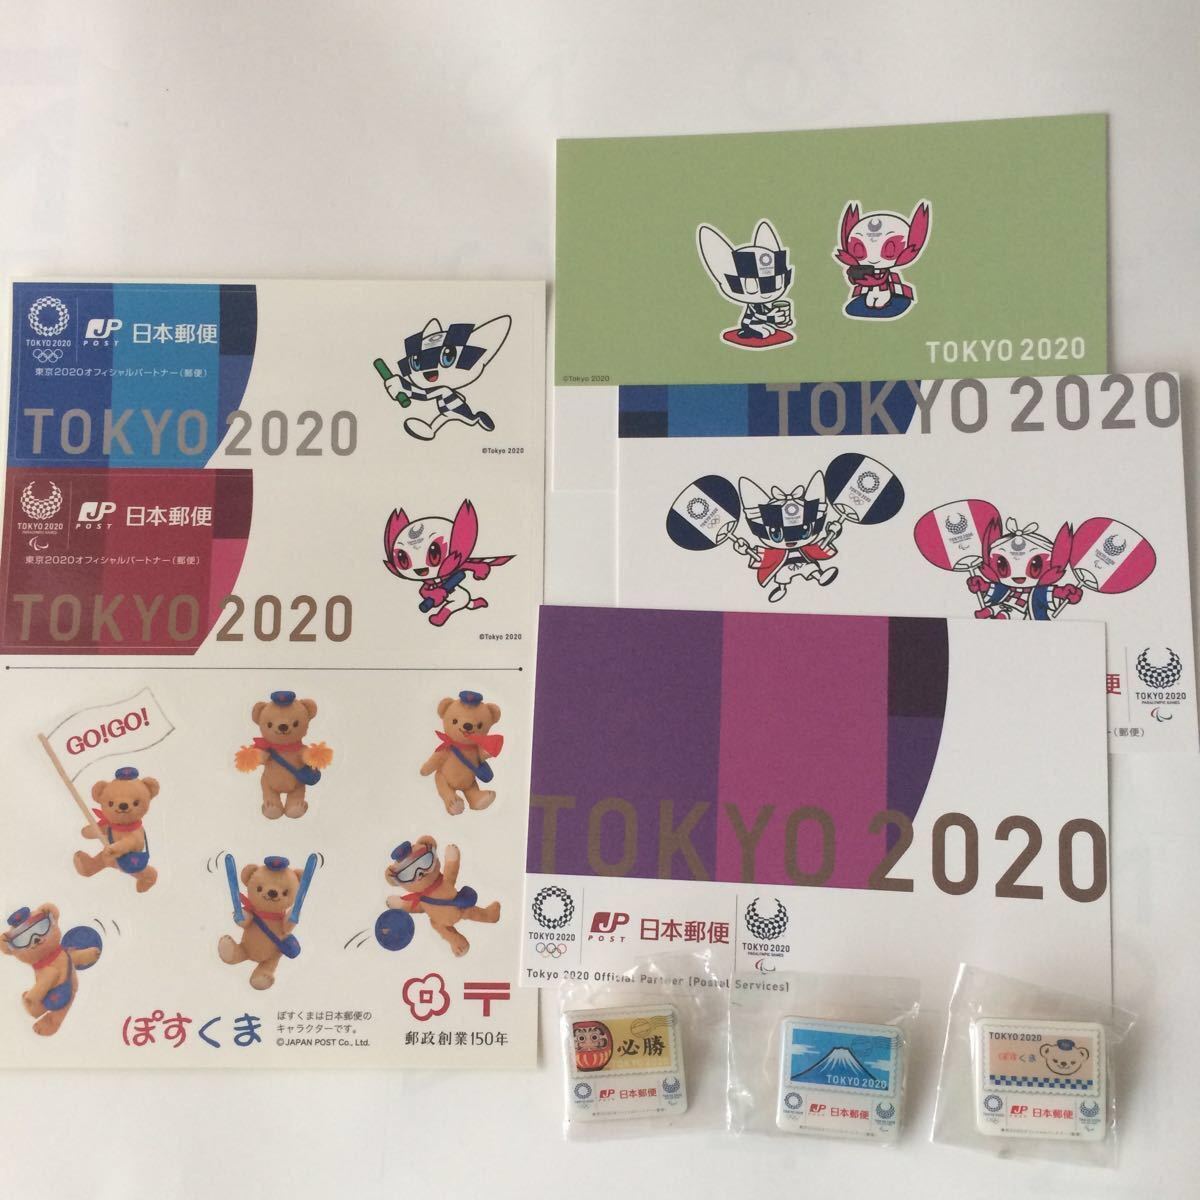 東京2020大会 日本郵便ピンバッジ3点 オリジナル絵はがき3枚 シール1枚 非売品 選手村臨時局 分室